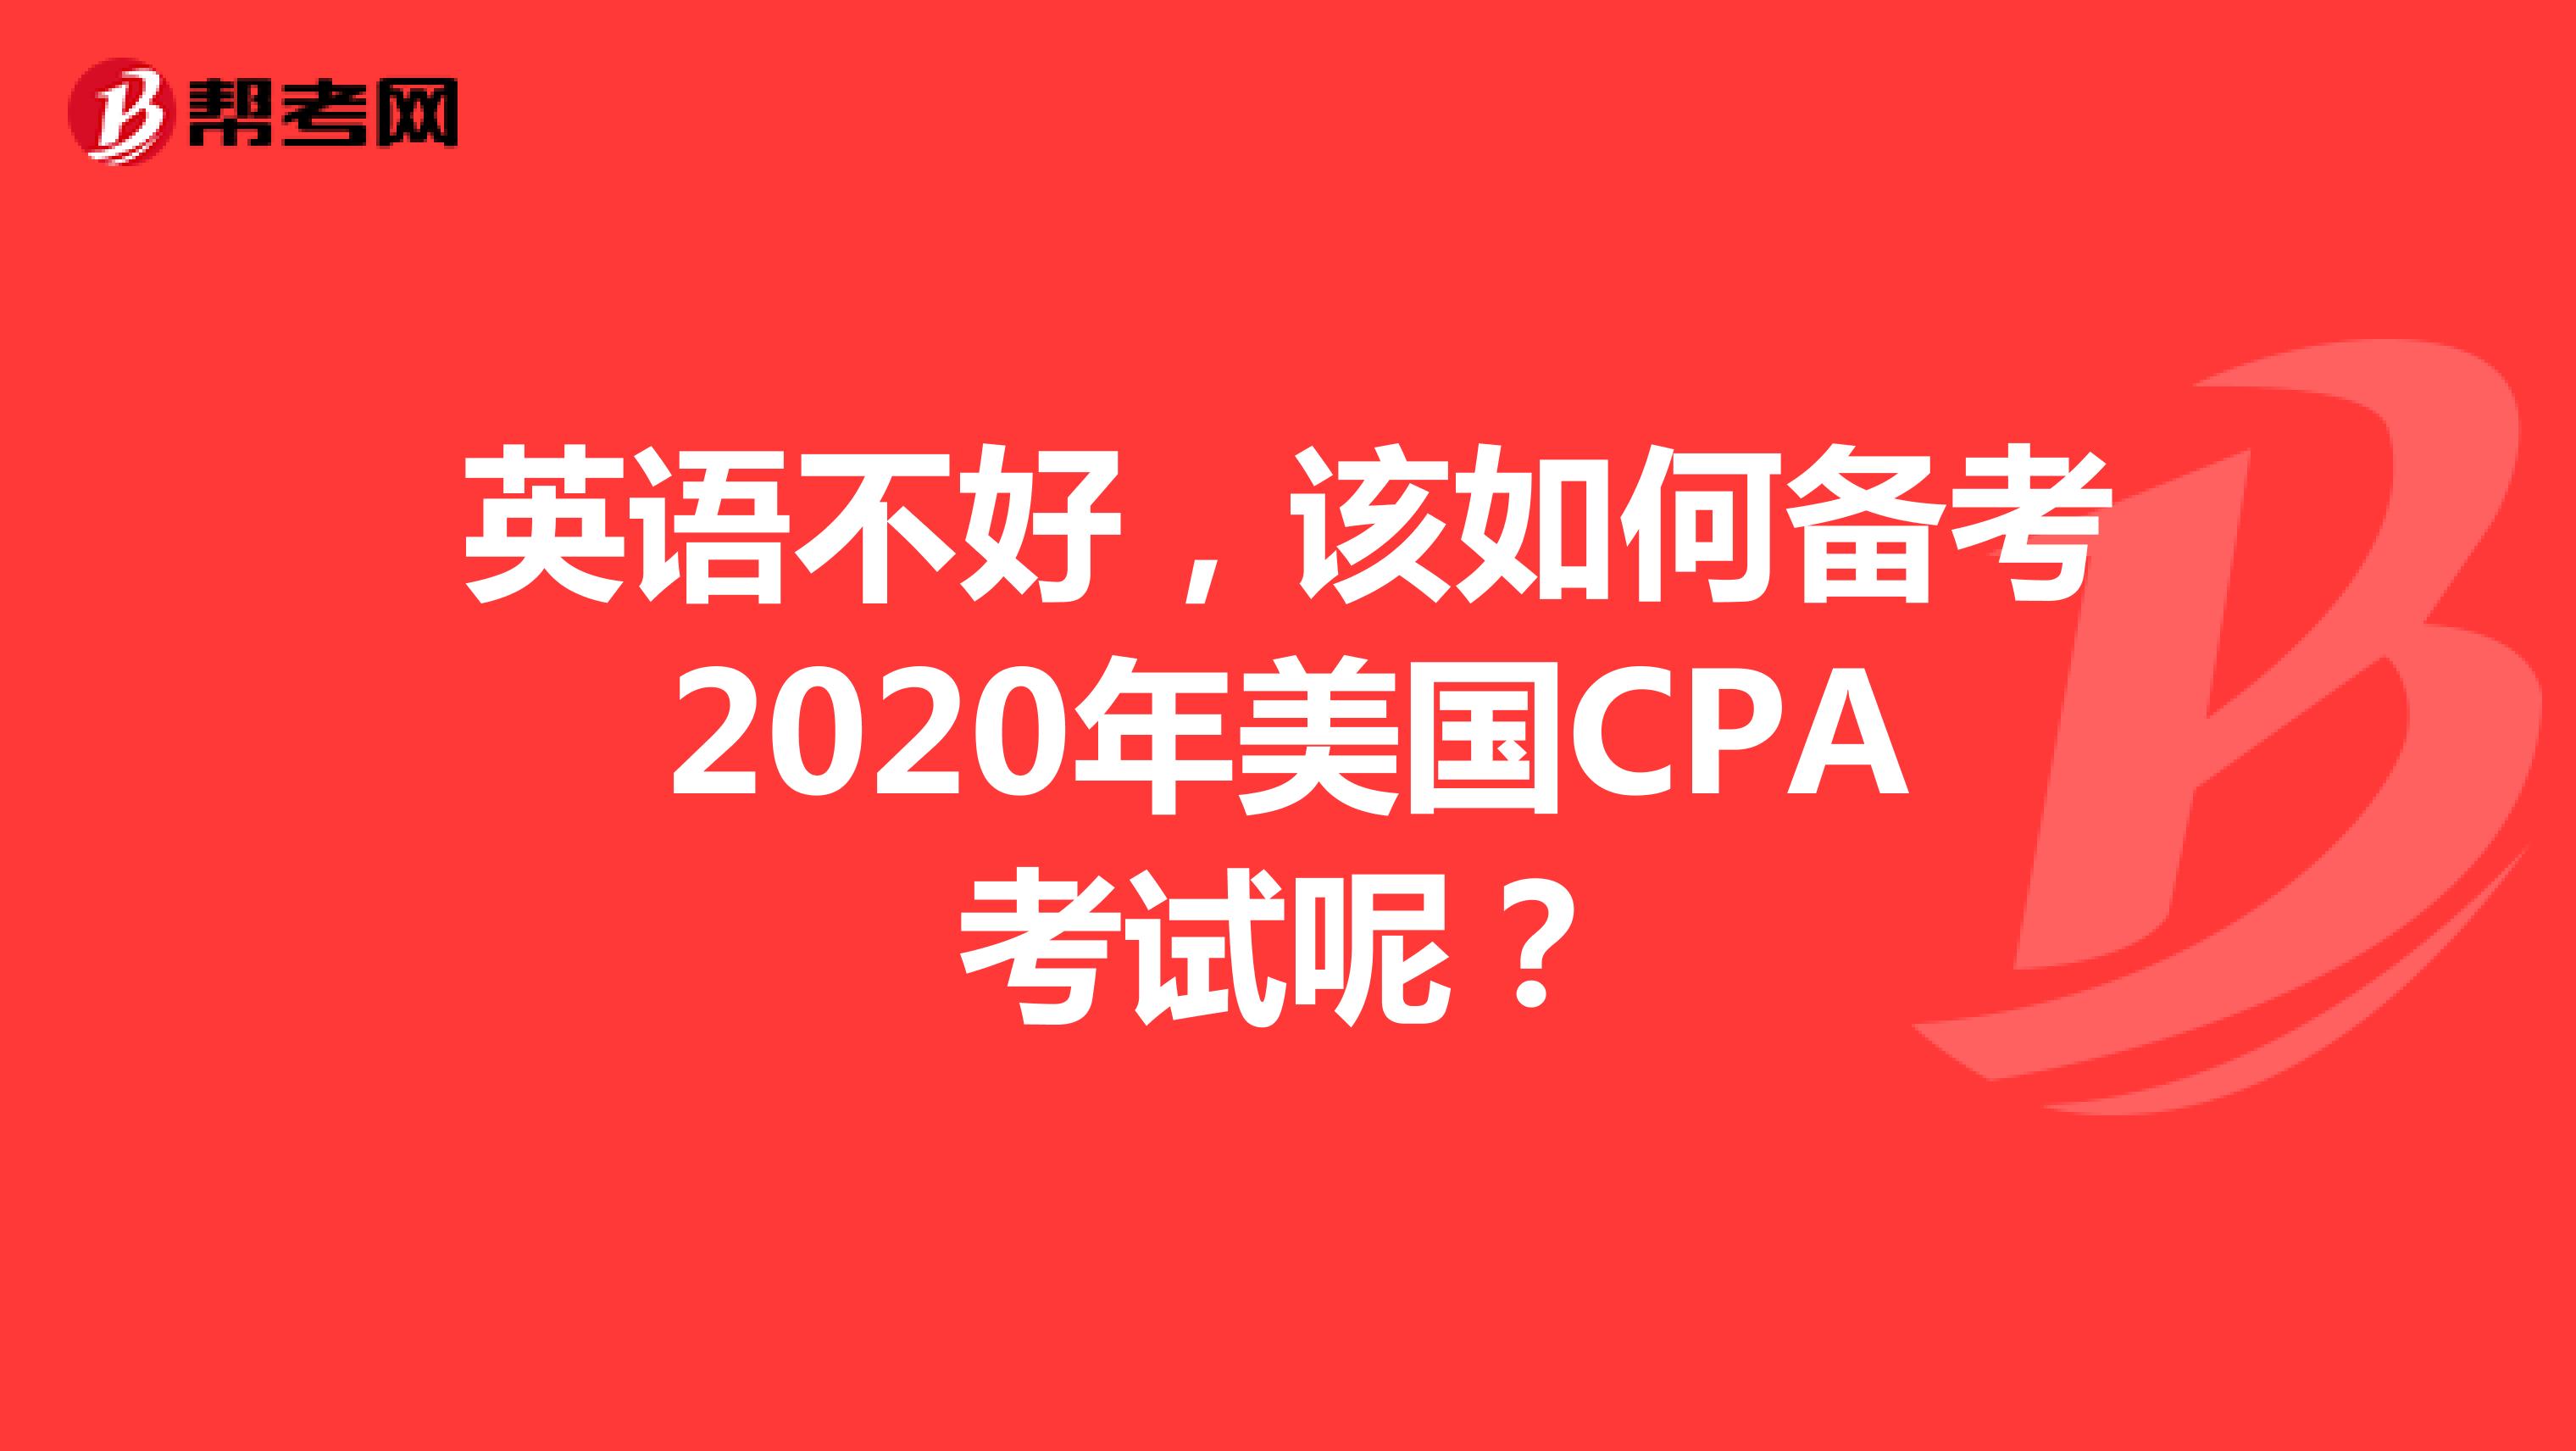 英语不好，该如何备考2020年美国CPA考试呢？